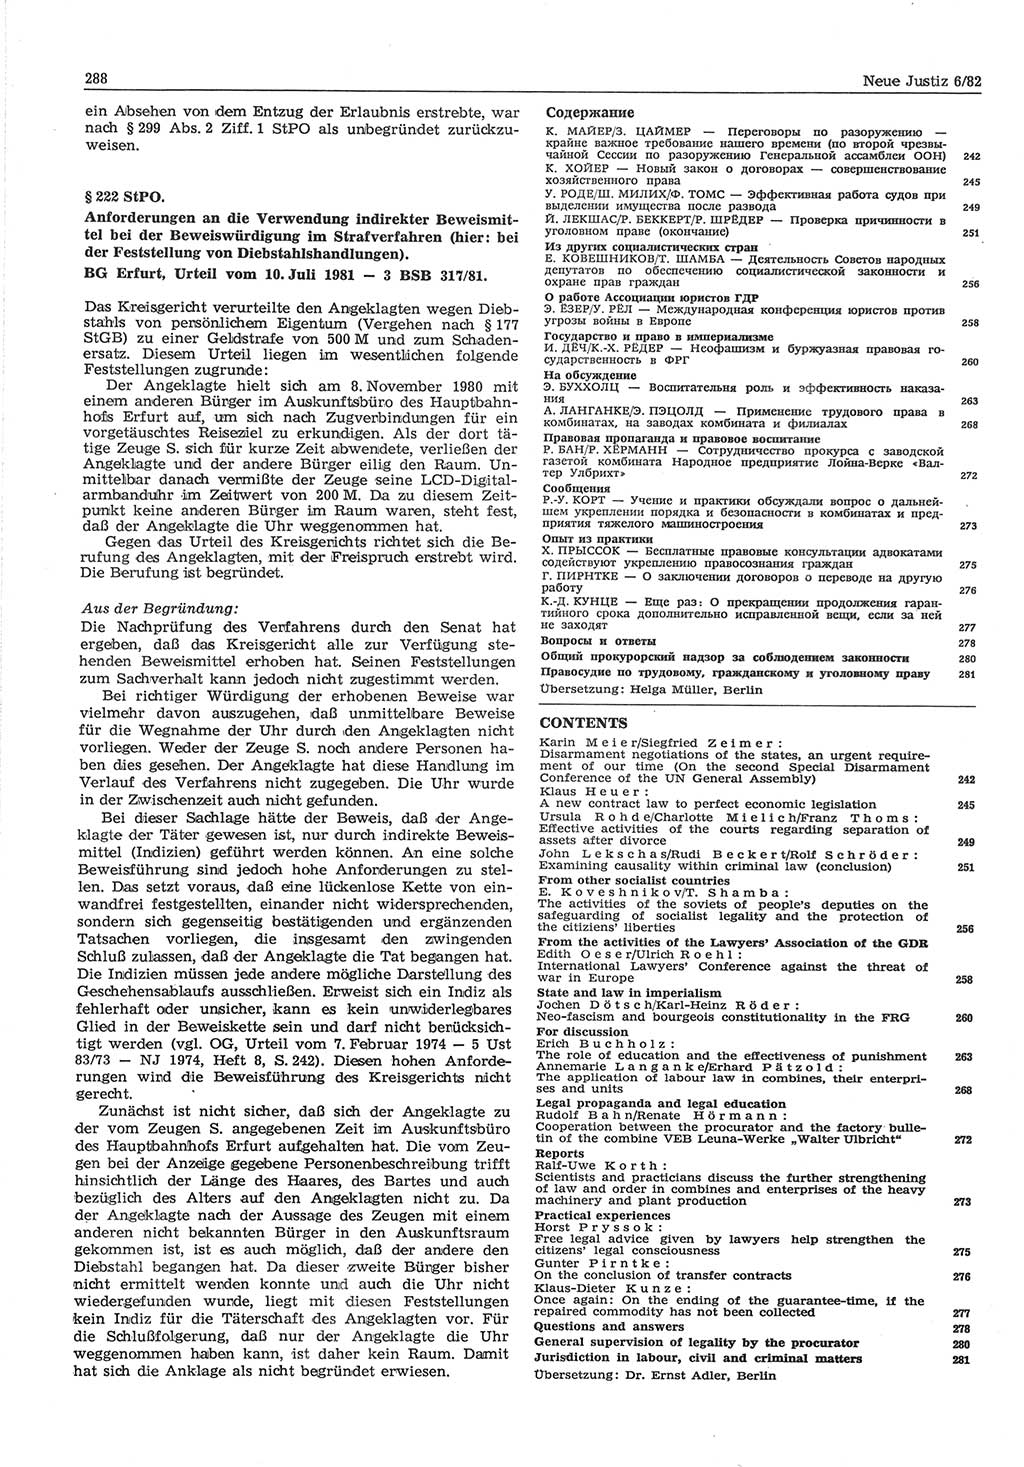 Neue Justiz (NJ), Zeitschrift für sozialistisches Recht und Gesetzlichkeit [Deutsche Demokratische Republik (DDR)], 36. Jahrgang 1982, Seite 288 (NJ DDR 1982, S. 288)